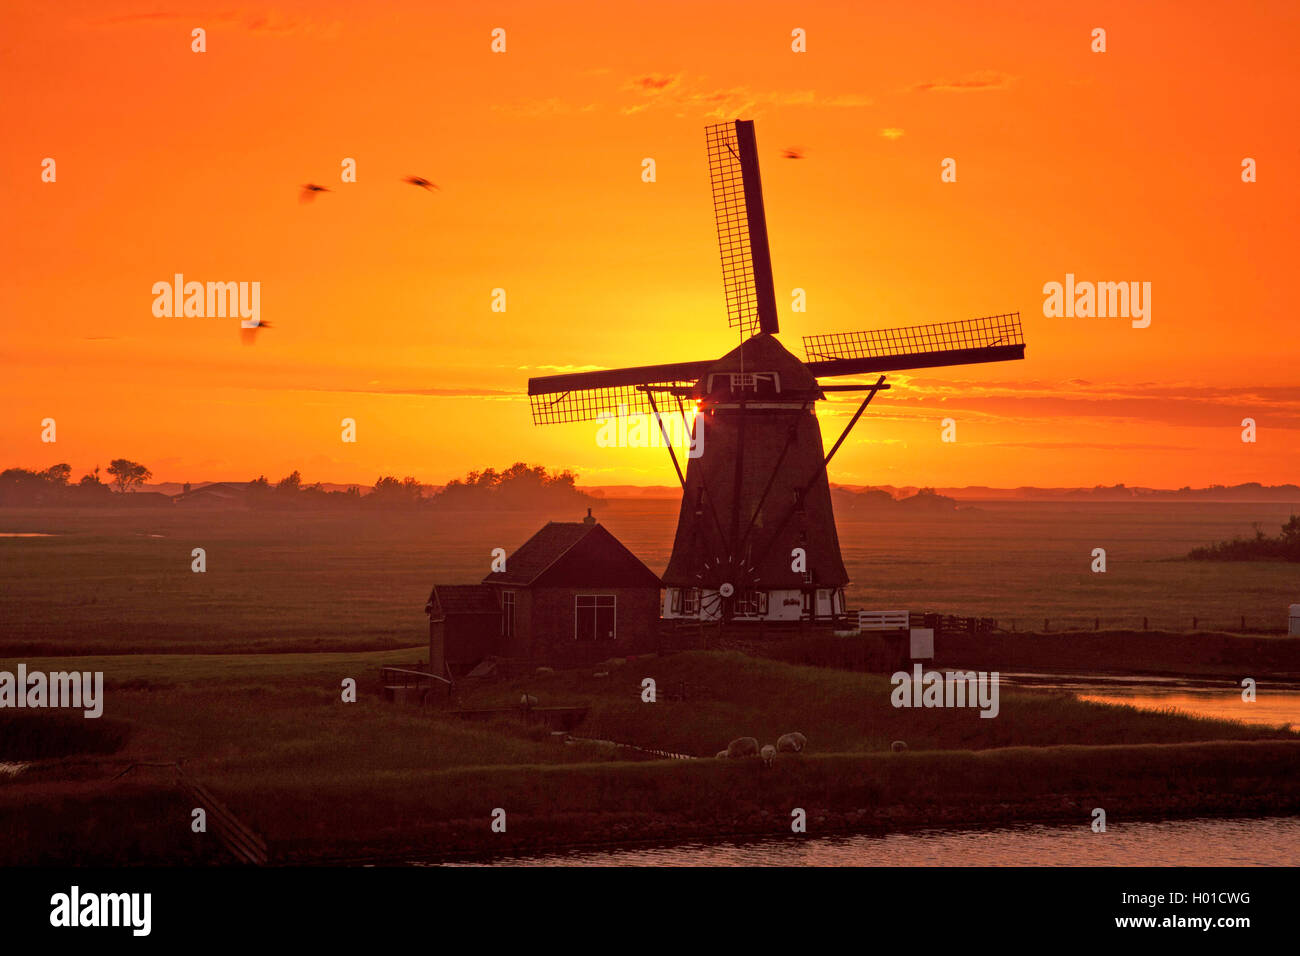 Windmuehle Het Noorden bei Sonnenuntergang, Niederlande, Texel | windmill Het Noorden at sunset, Netherlands, Texel | BLWS433392 Stock Photo